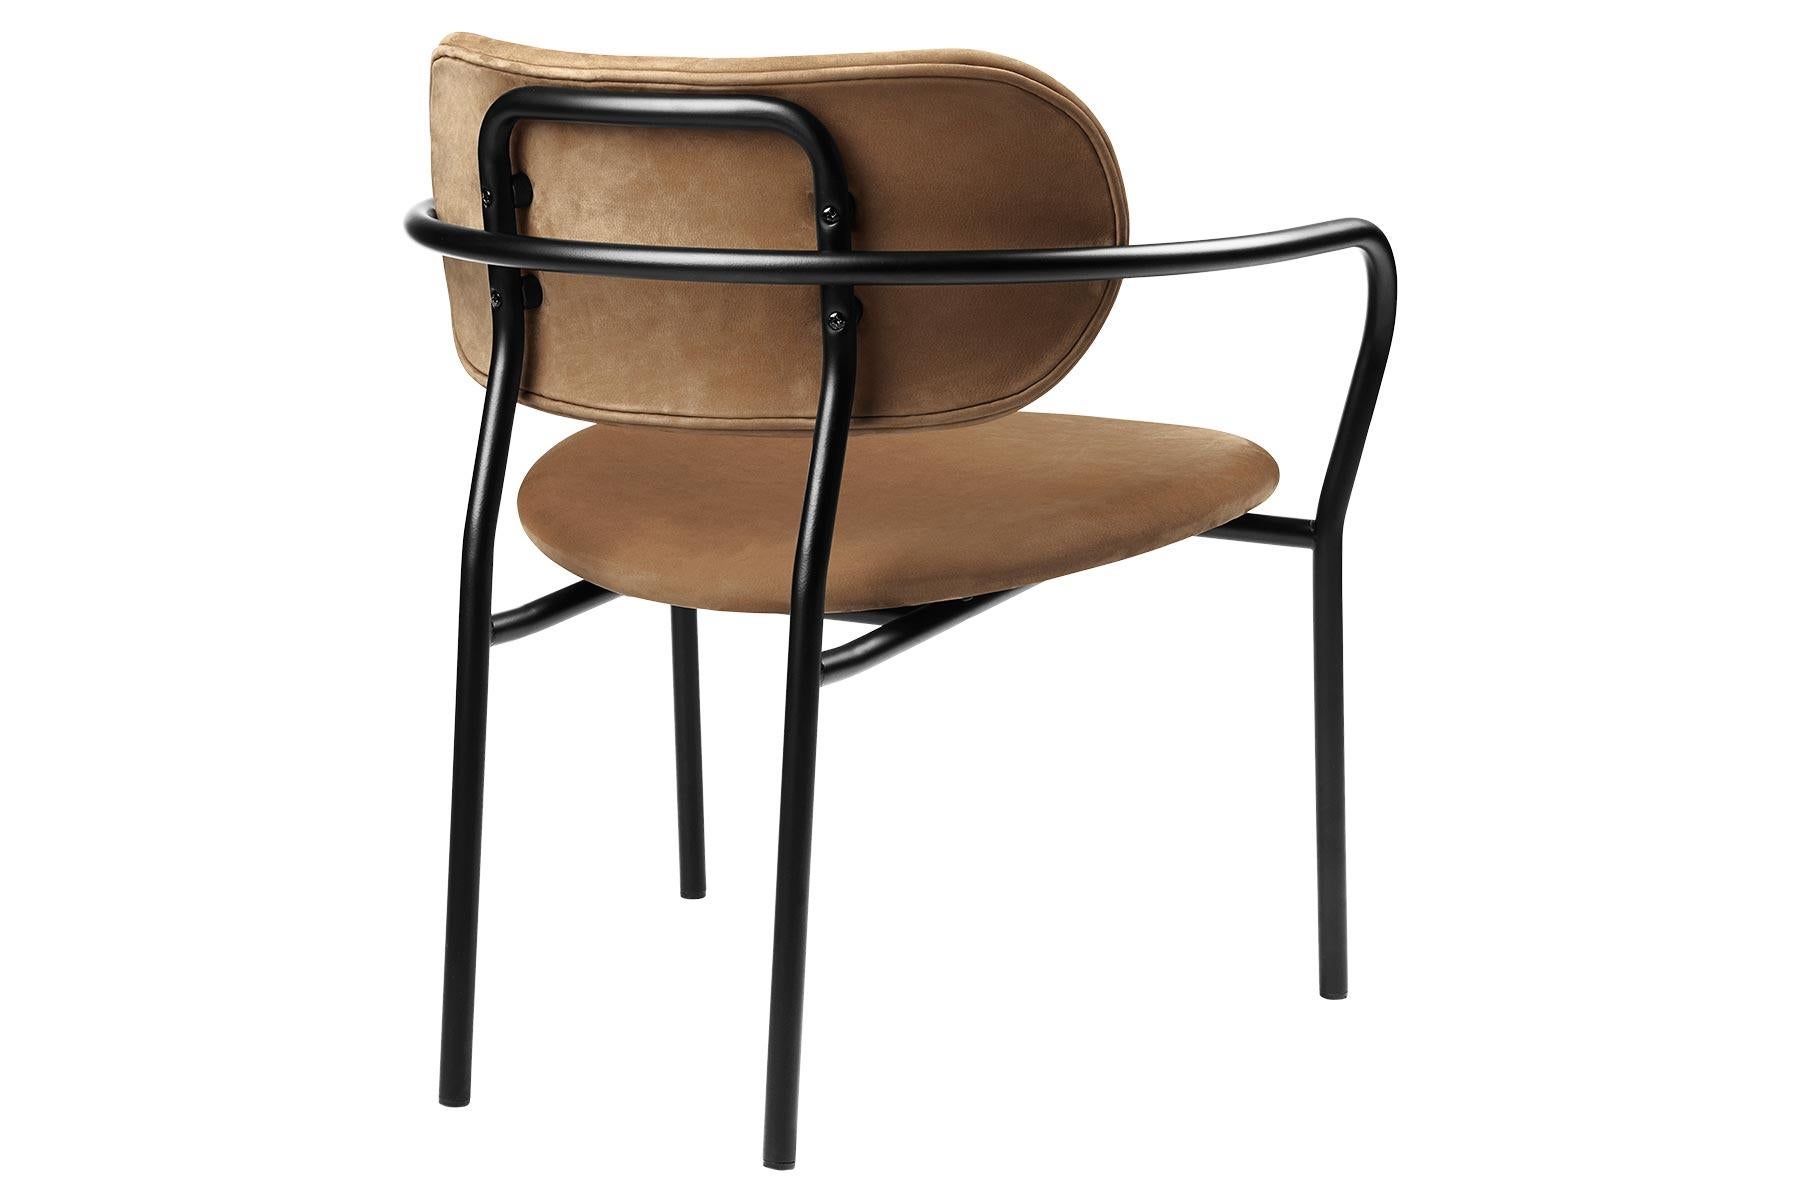 Le fauteuil de salon Coco avec accoudoir fait partie de la collection Coco, conçue par OEO Studio dans le but de créer un design charismatique qui offre un haut niveau de confort. La chaise emprunte des références à la simplicité industrielle, à la